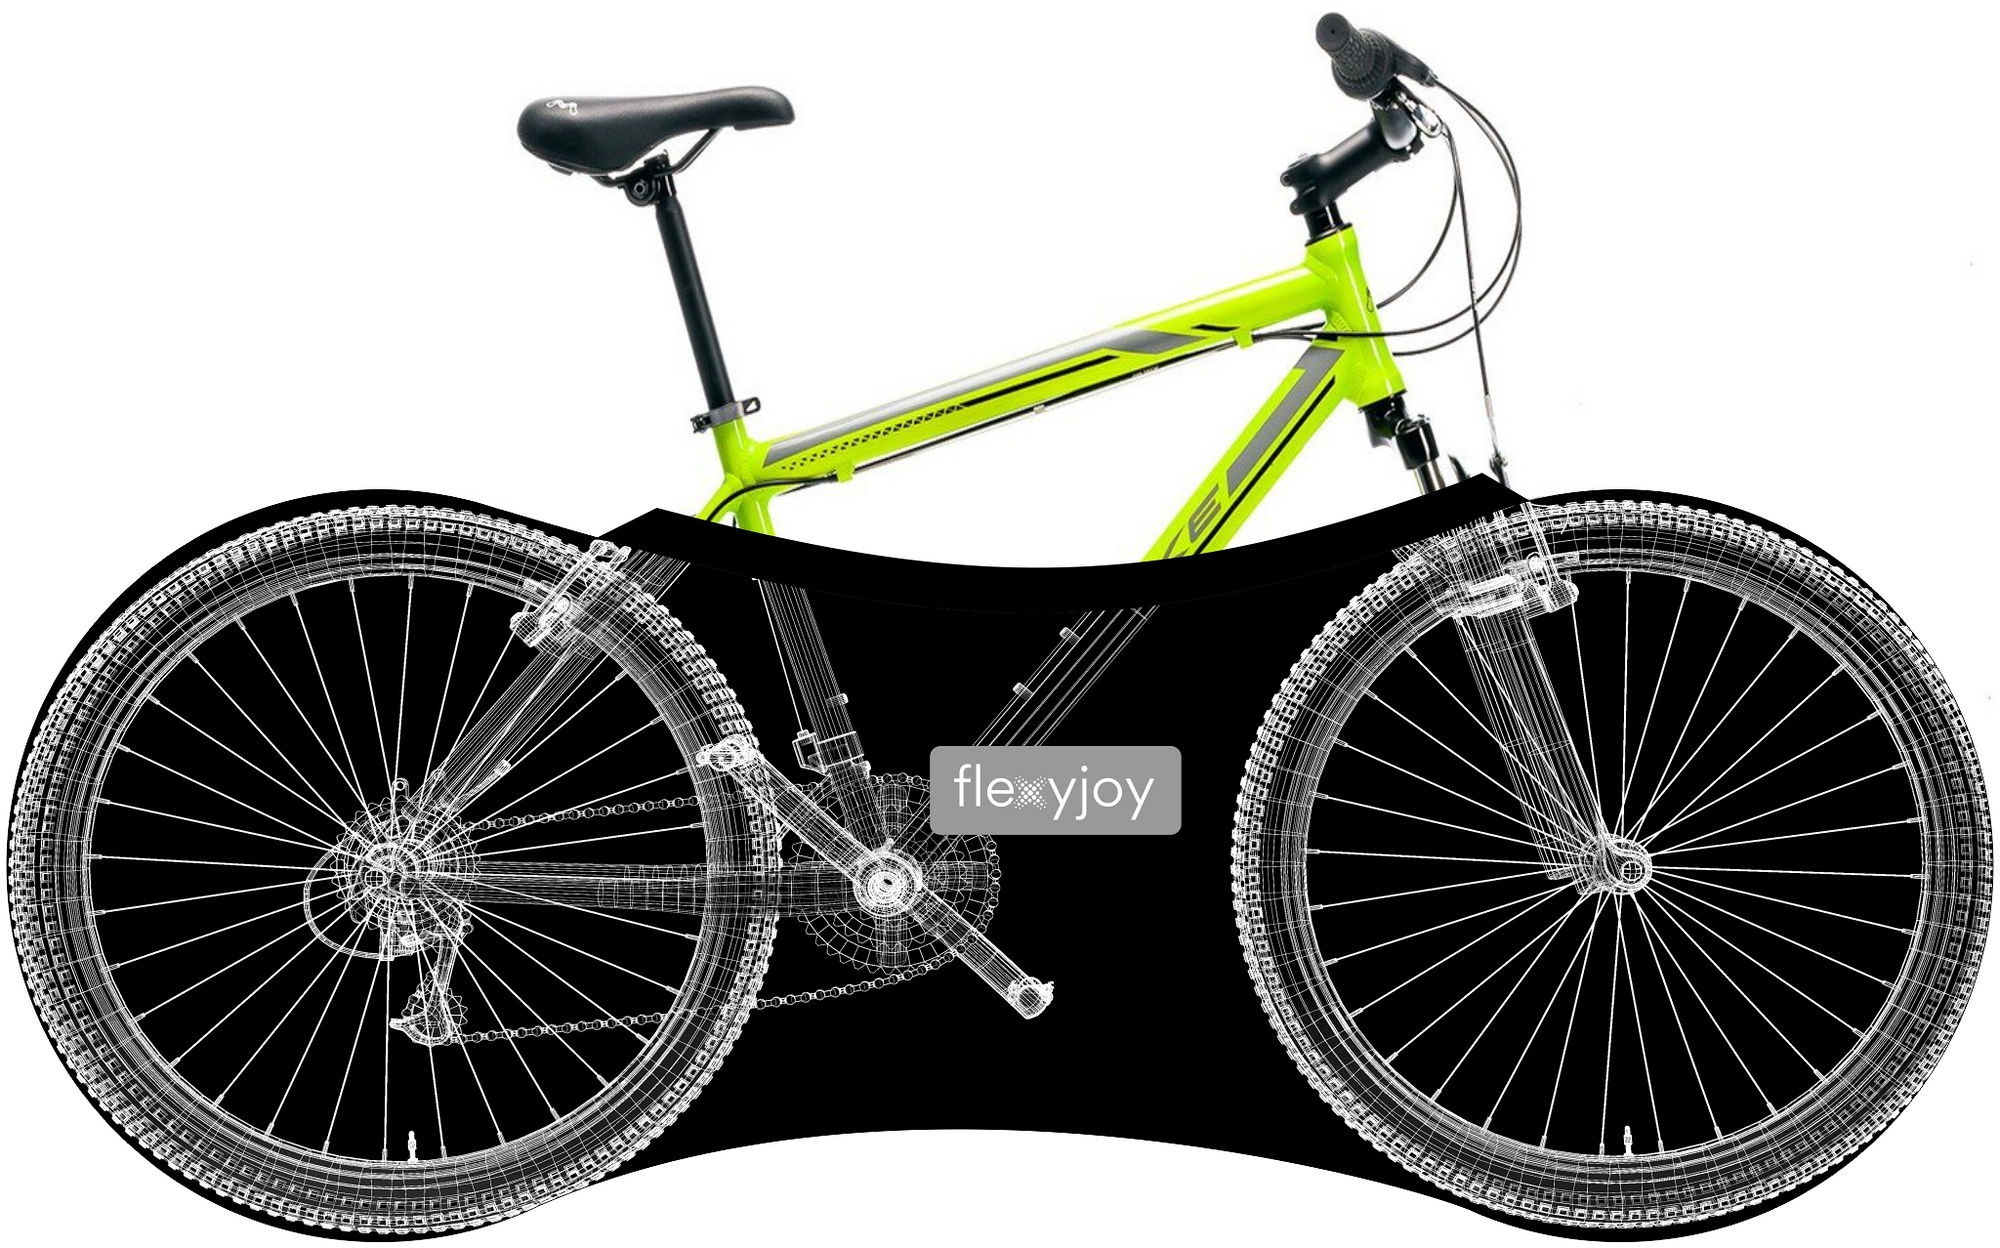 Zdjęcia - Torba rowerowa Flexyjoy Elastyczny, uniwersalny pokrowiec rowerowy FlexyJoy FJB812